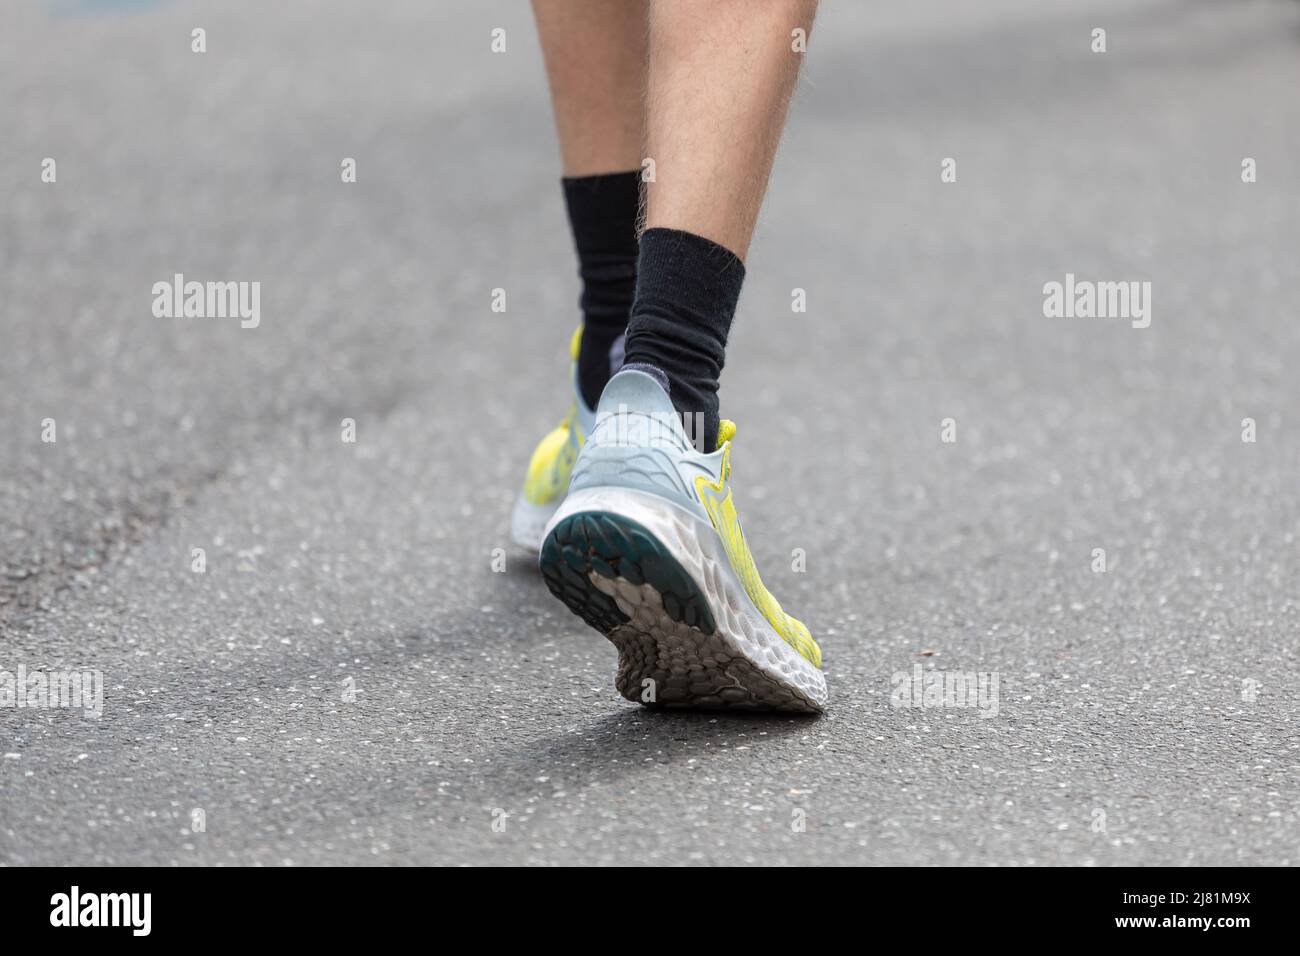 black socks in running shoes on asphalt Stock Photo